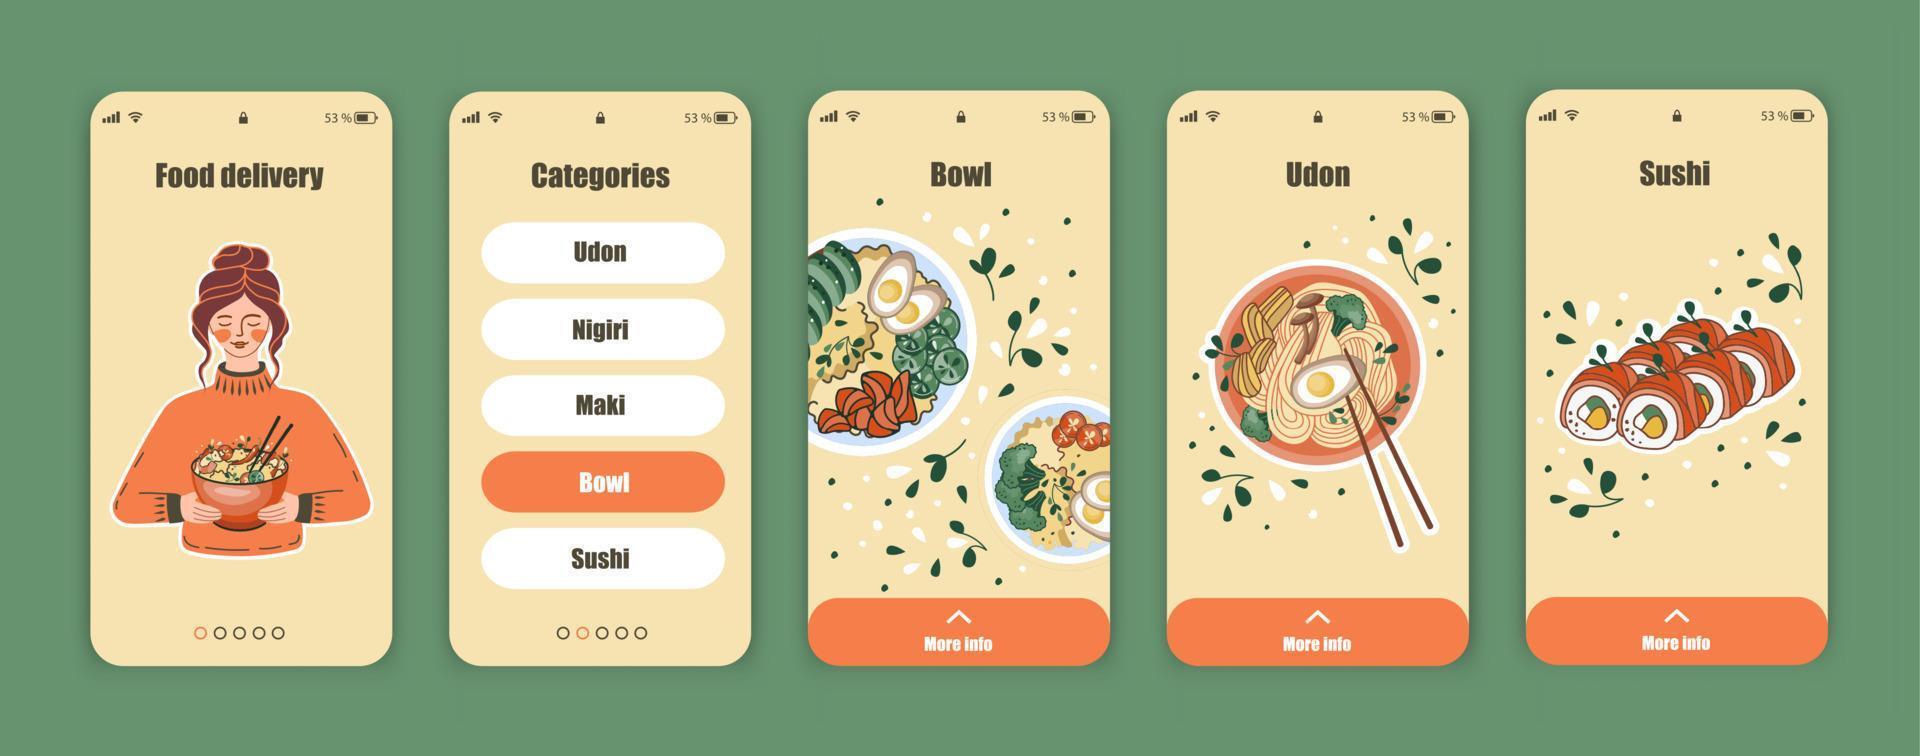 conjunto de telas ui, ux para aplicativo móvel sobre entrega de comida. painel de comida asiática. loja online chinesa, coreana ou japonesa. modelo da interface. vetor